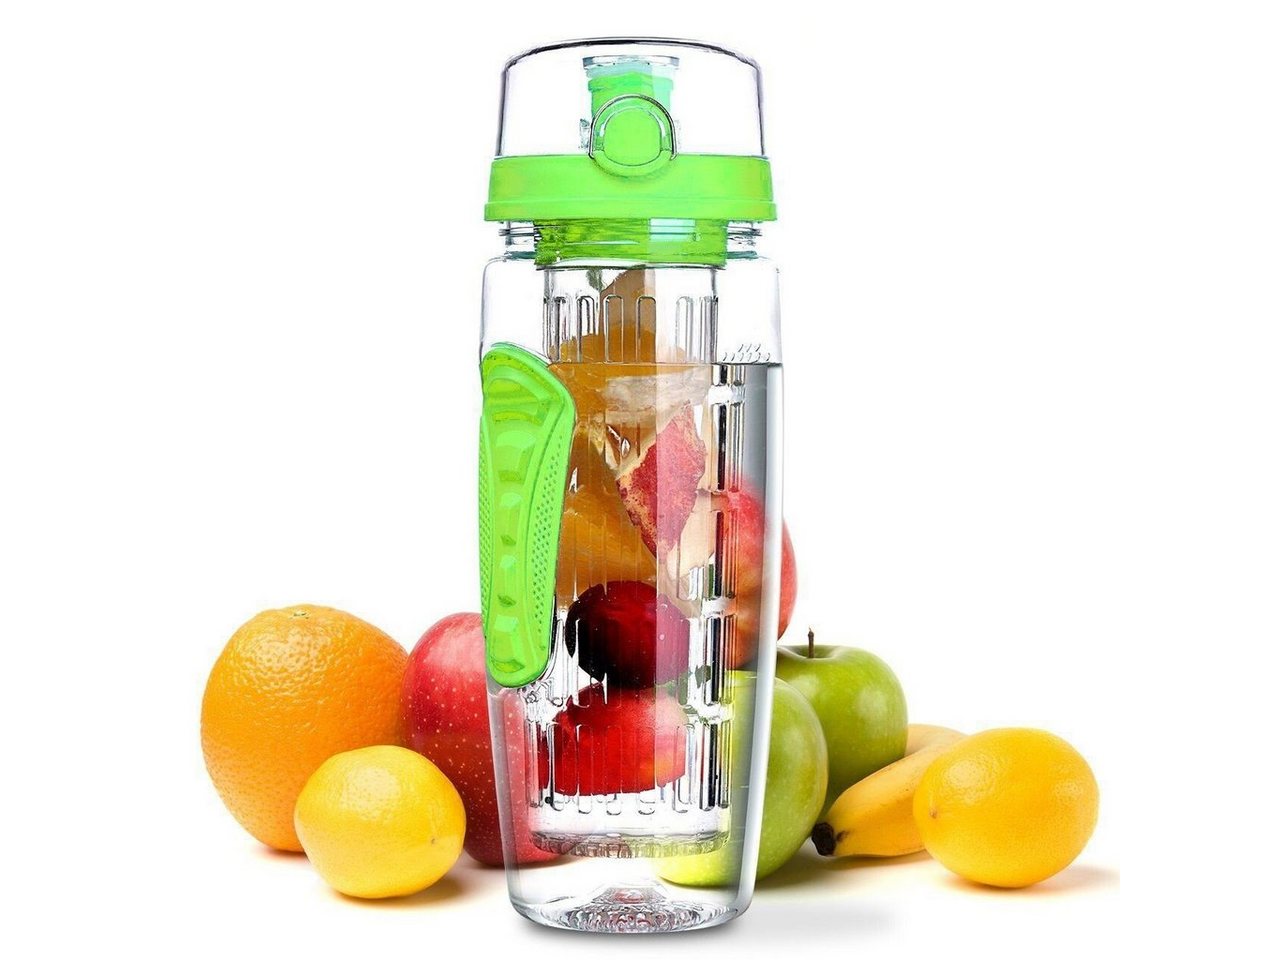 LA VAGUE Trinkflasche VITALITY trinkflasche mit einsatz, Trinkflasche mit Früchtesieb für perfekt aromatisierte Getränke von LA VAGUE